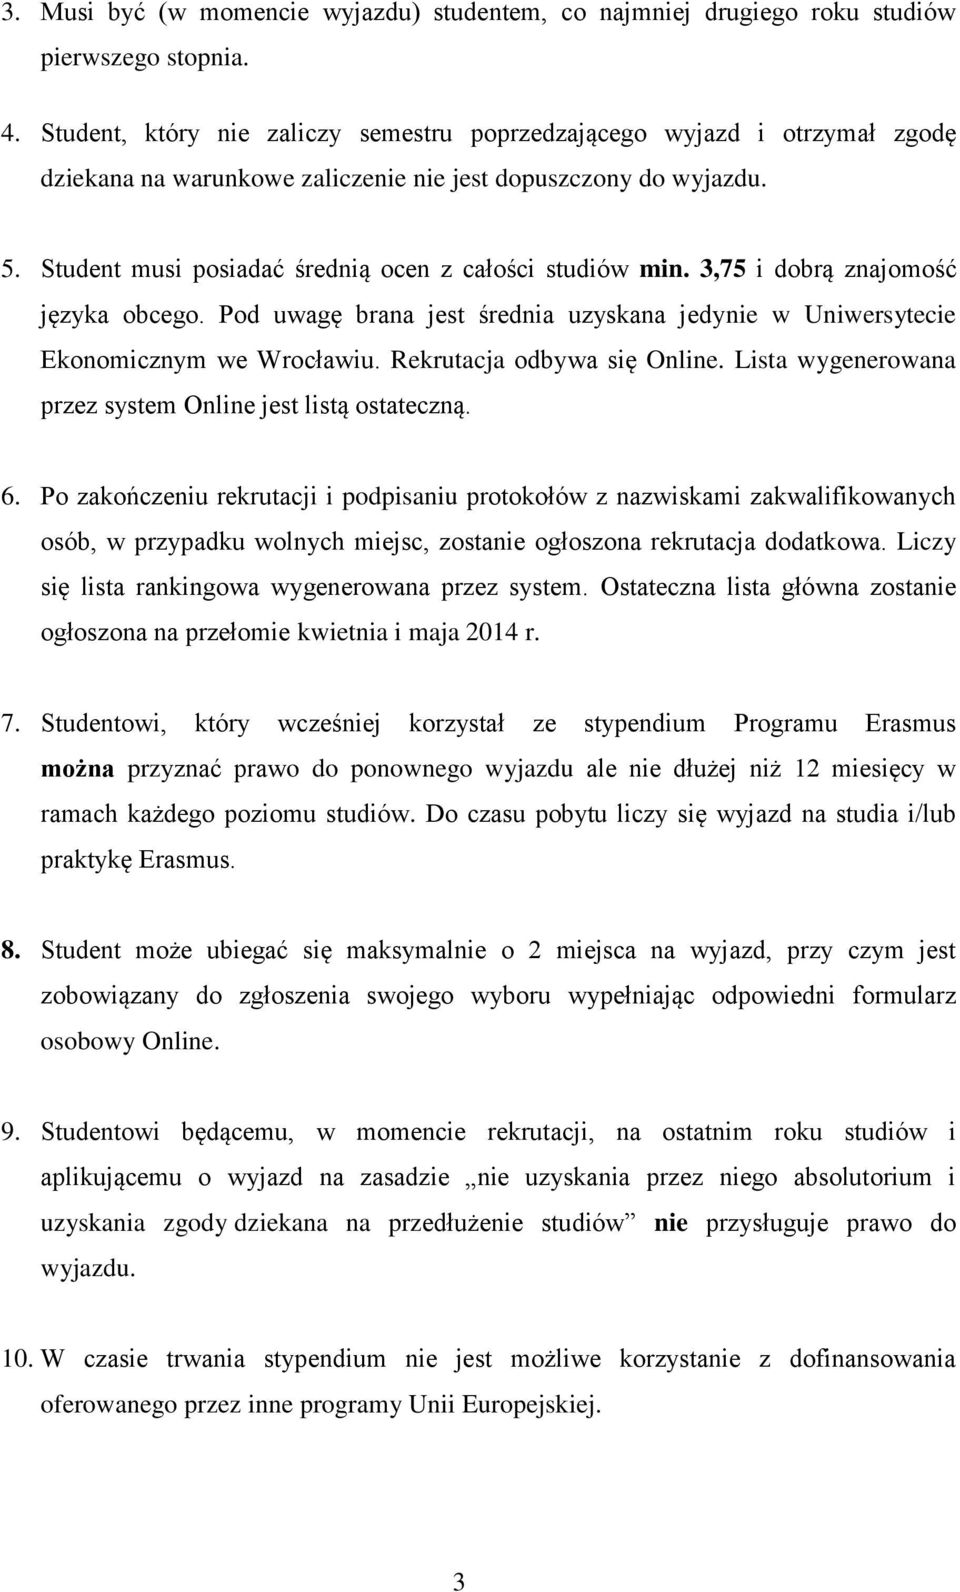 Student musi posiadać średnią ocen z całości studiów min. 3,75 i dobrą znajomość języka obcego. Pod uwagę brana jest średnia uzyskana jedynie w Uniwersytecie Ekonomicznym we Wrocławiu.